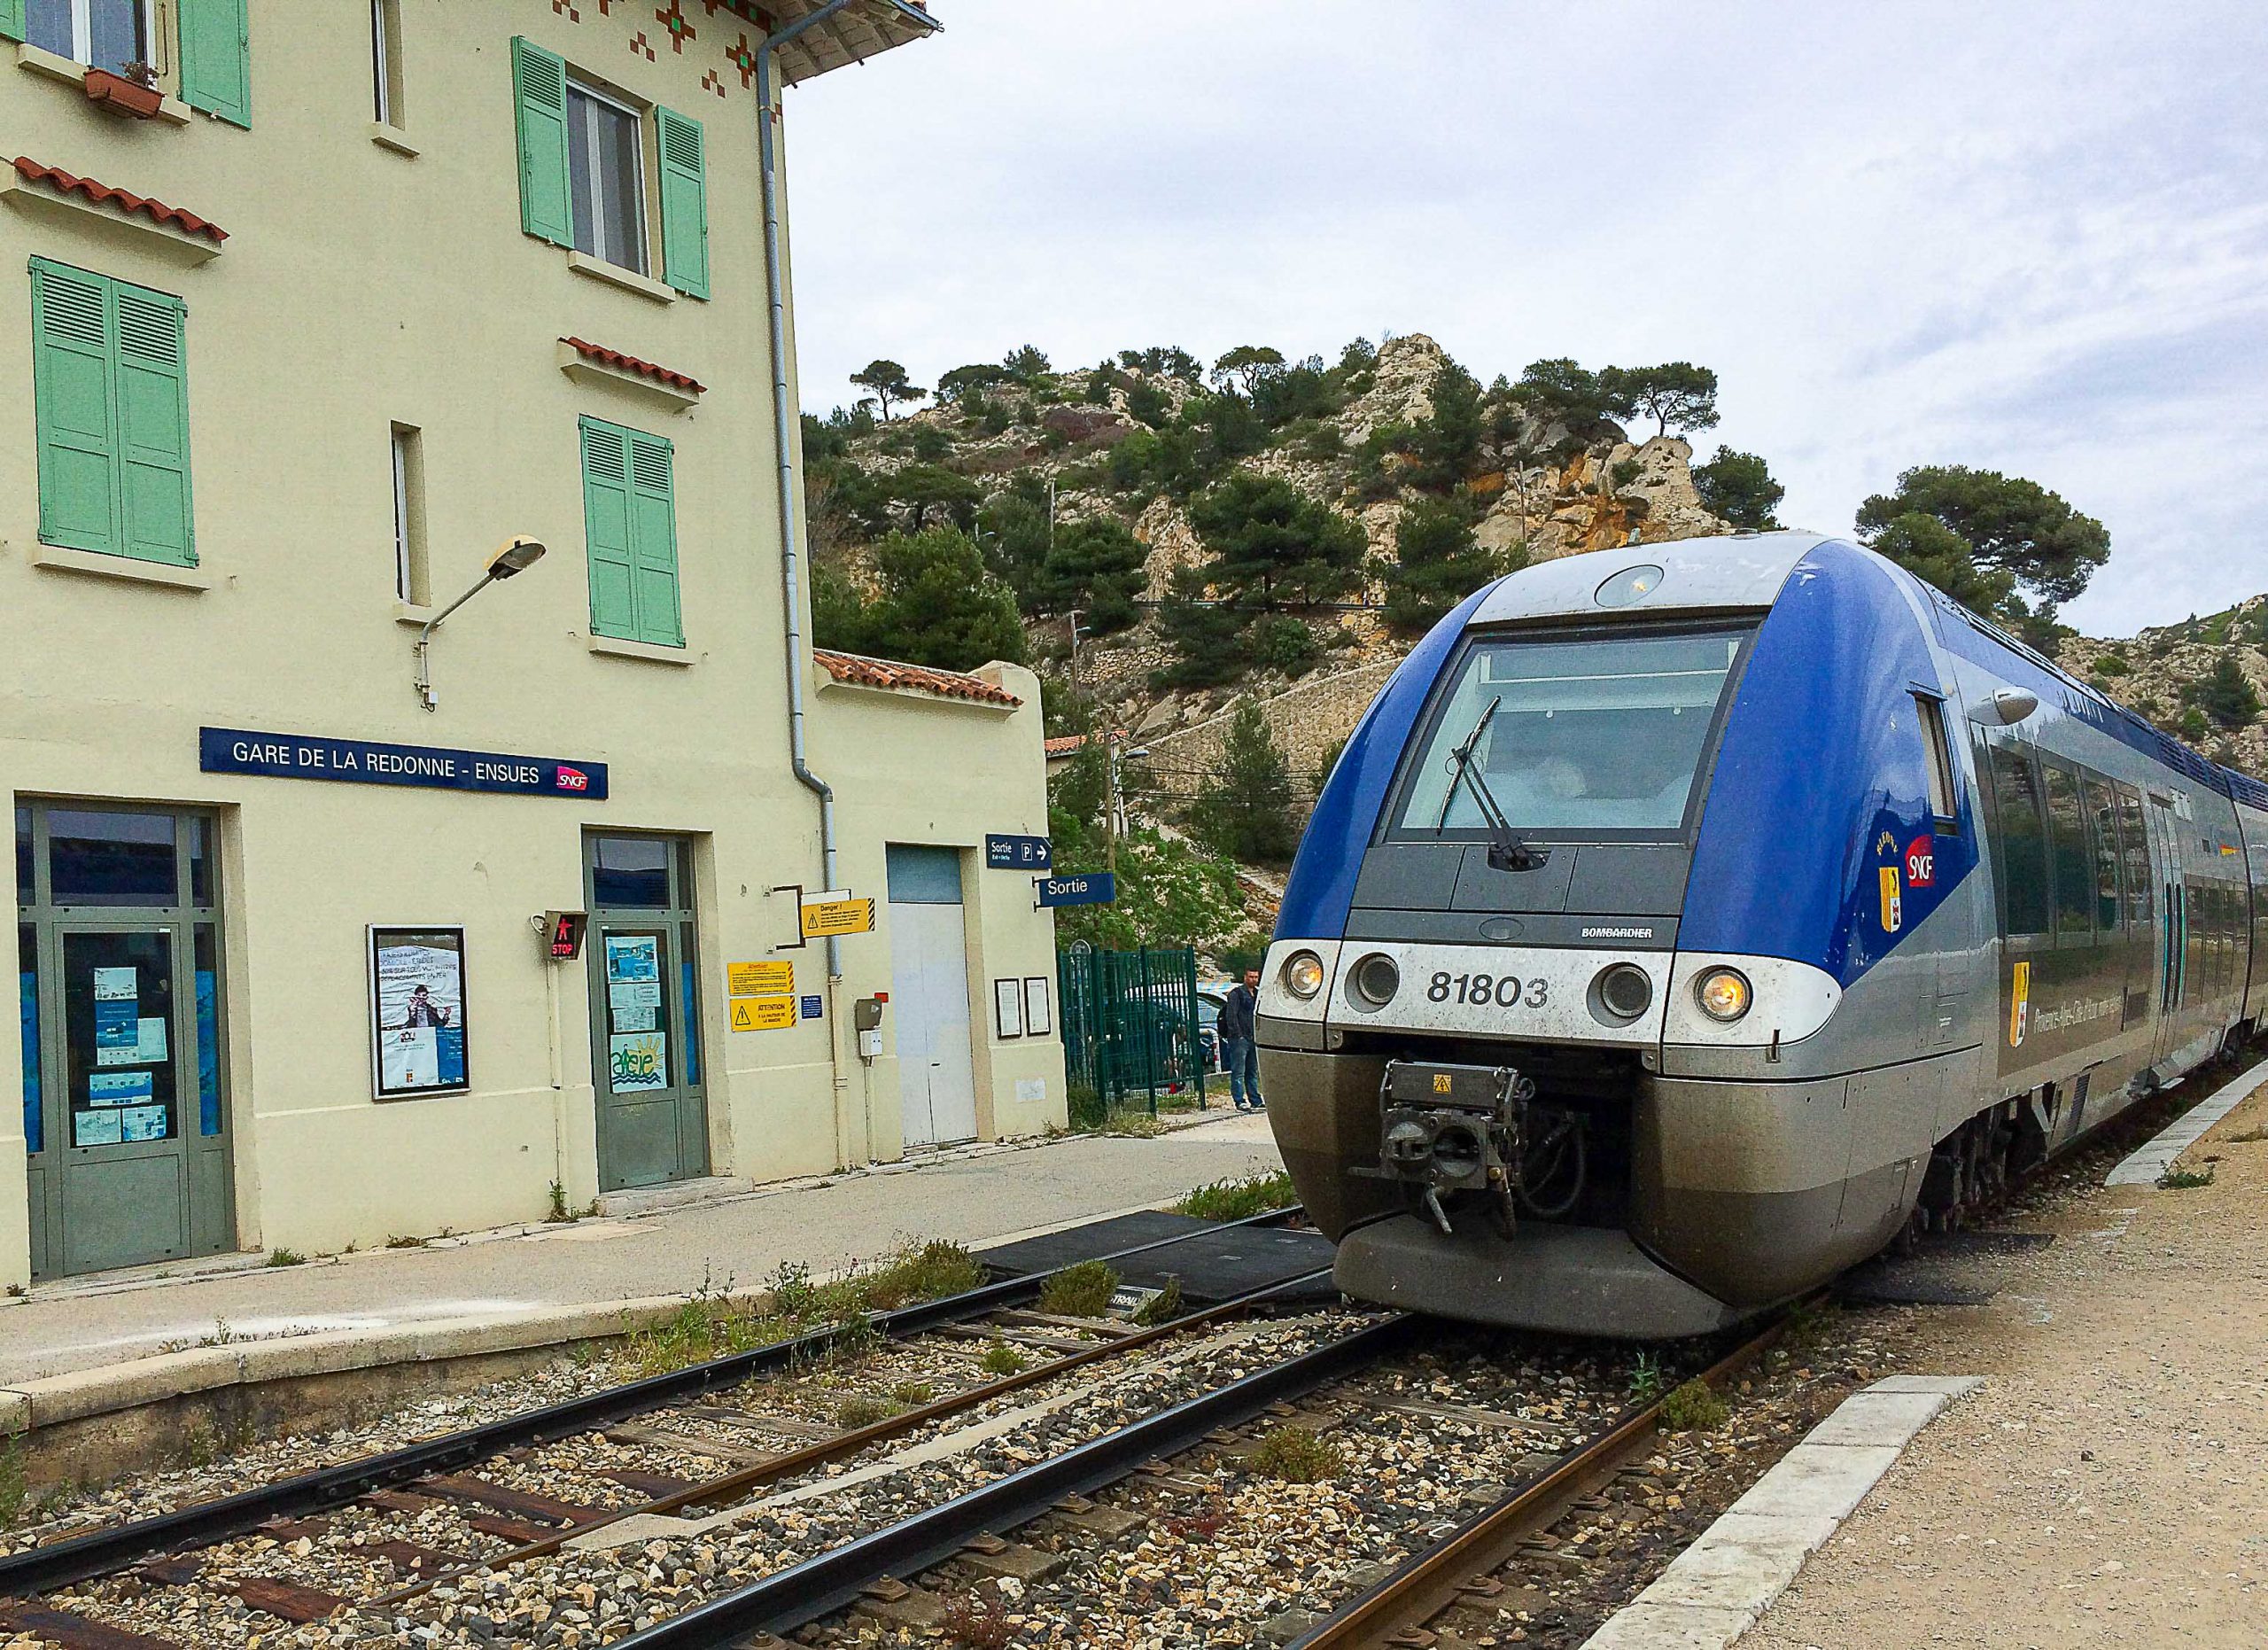 I Frankrike kan det være ekstra fint å bruke interrailbilletten til å reise rundt med lokale og regionale tog som ikke krever plassreservasjoner.